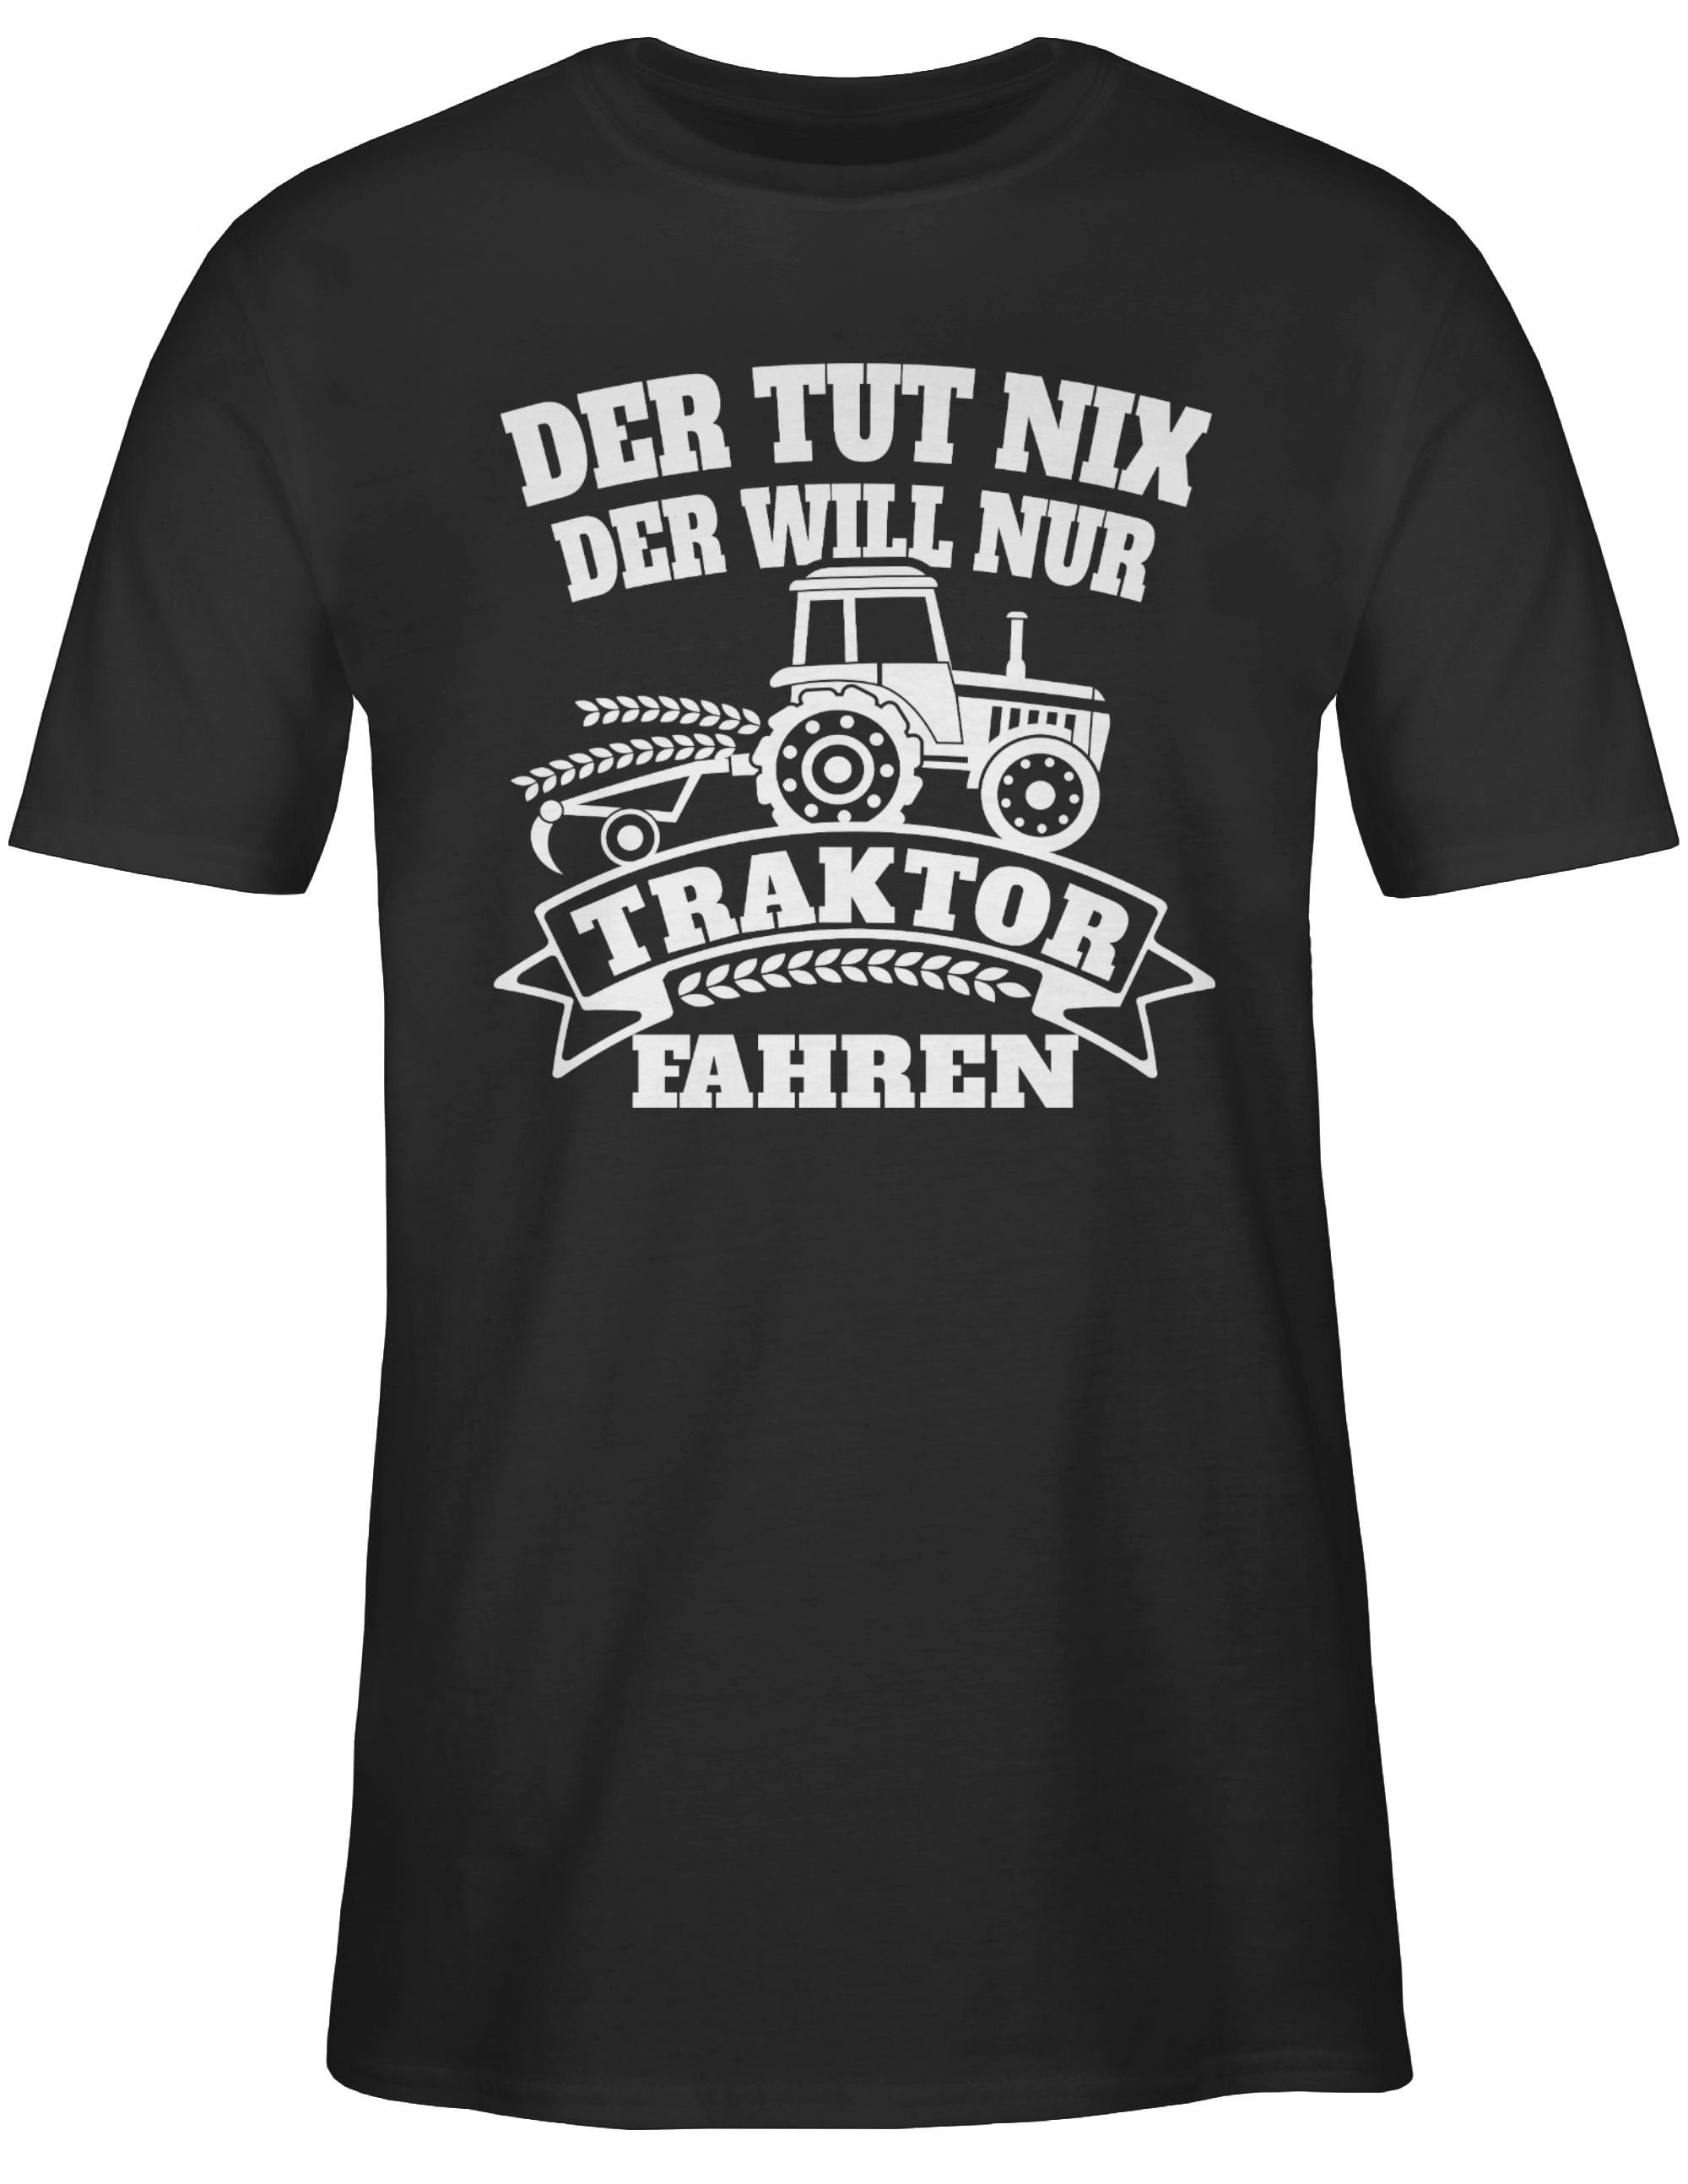 nix tut nur fahren 1 will Der Traktor der T-Shirt Shirtracer Traktor Schwarz